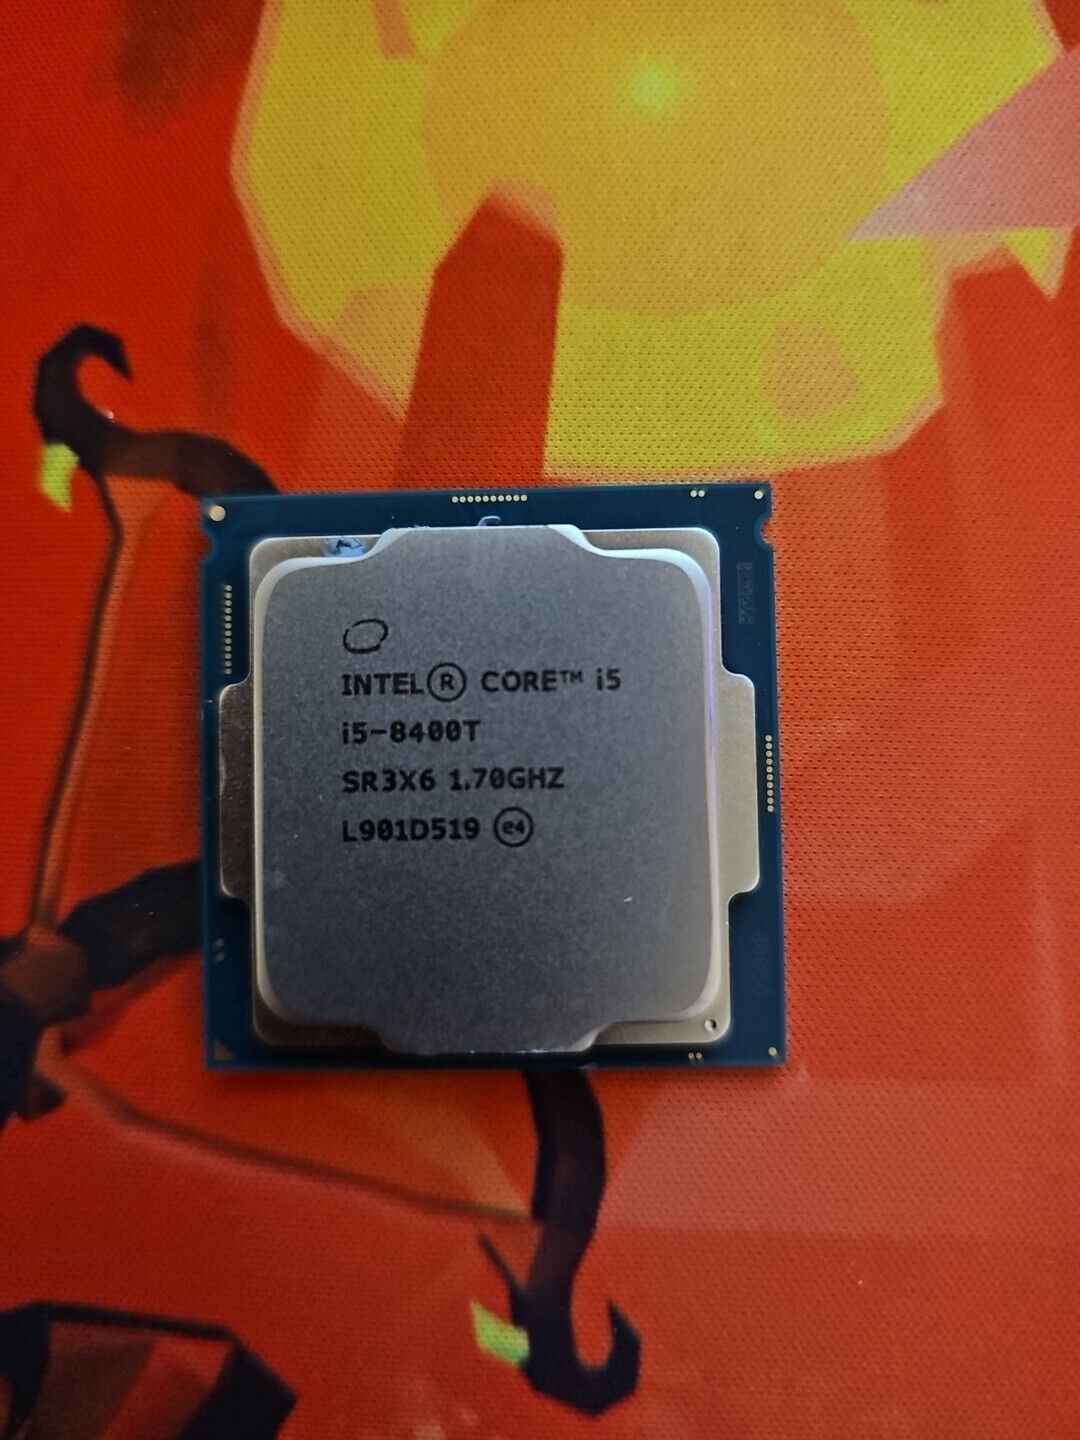 Intel Core i5-8400T 1.7 GHz 6-Core (SR3X6) Processor